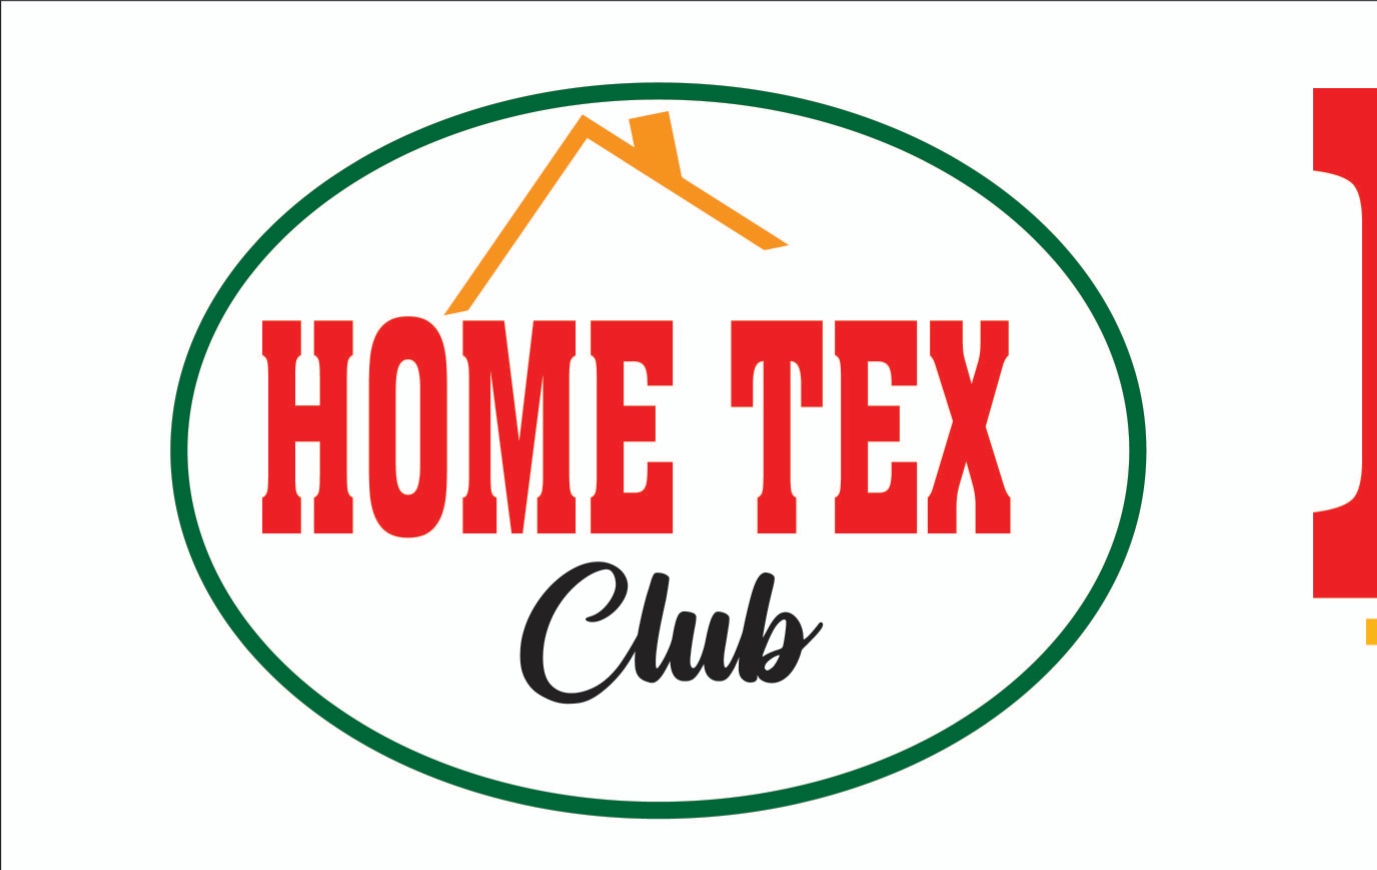 Hometex club